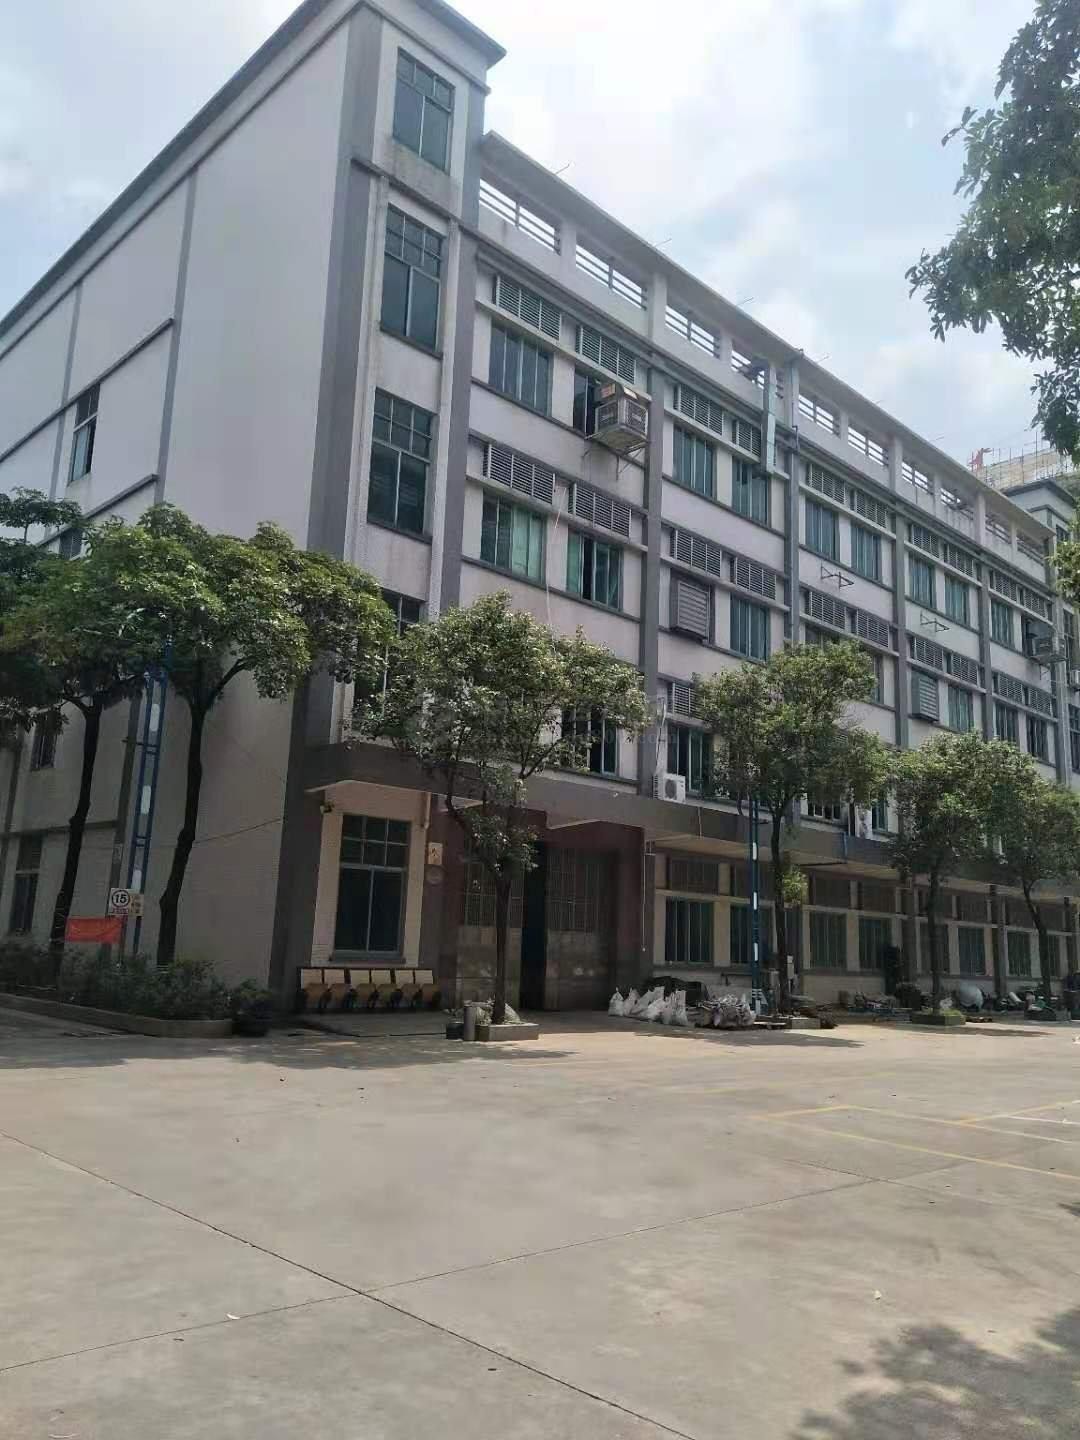 圳龙岗占地52亩工业用地出售建筑面积99534.平方